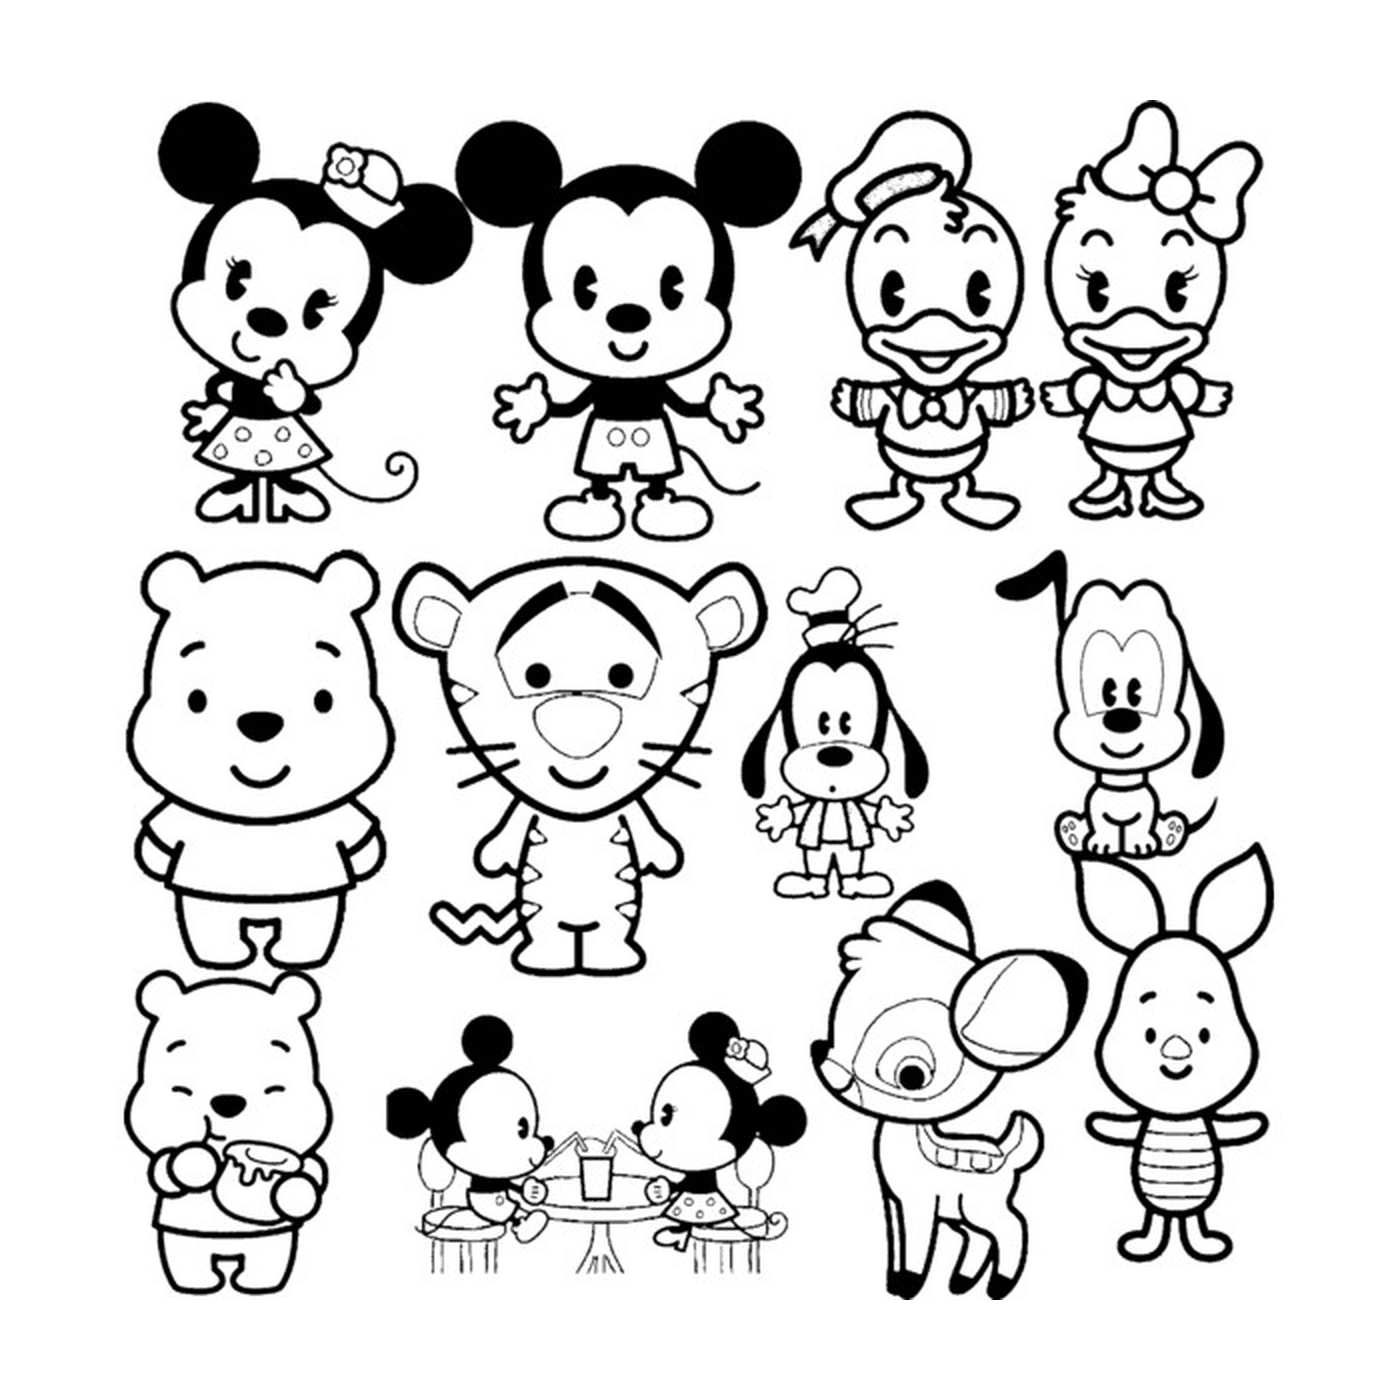  Disney Cuties 可爱的字符 